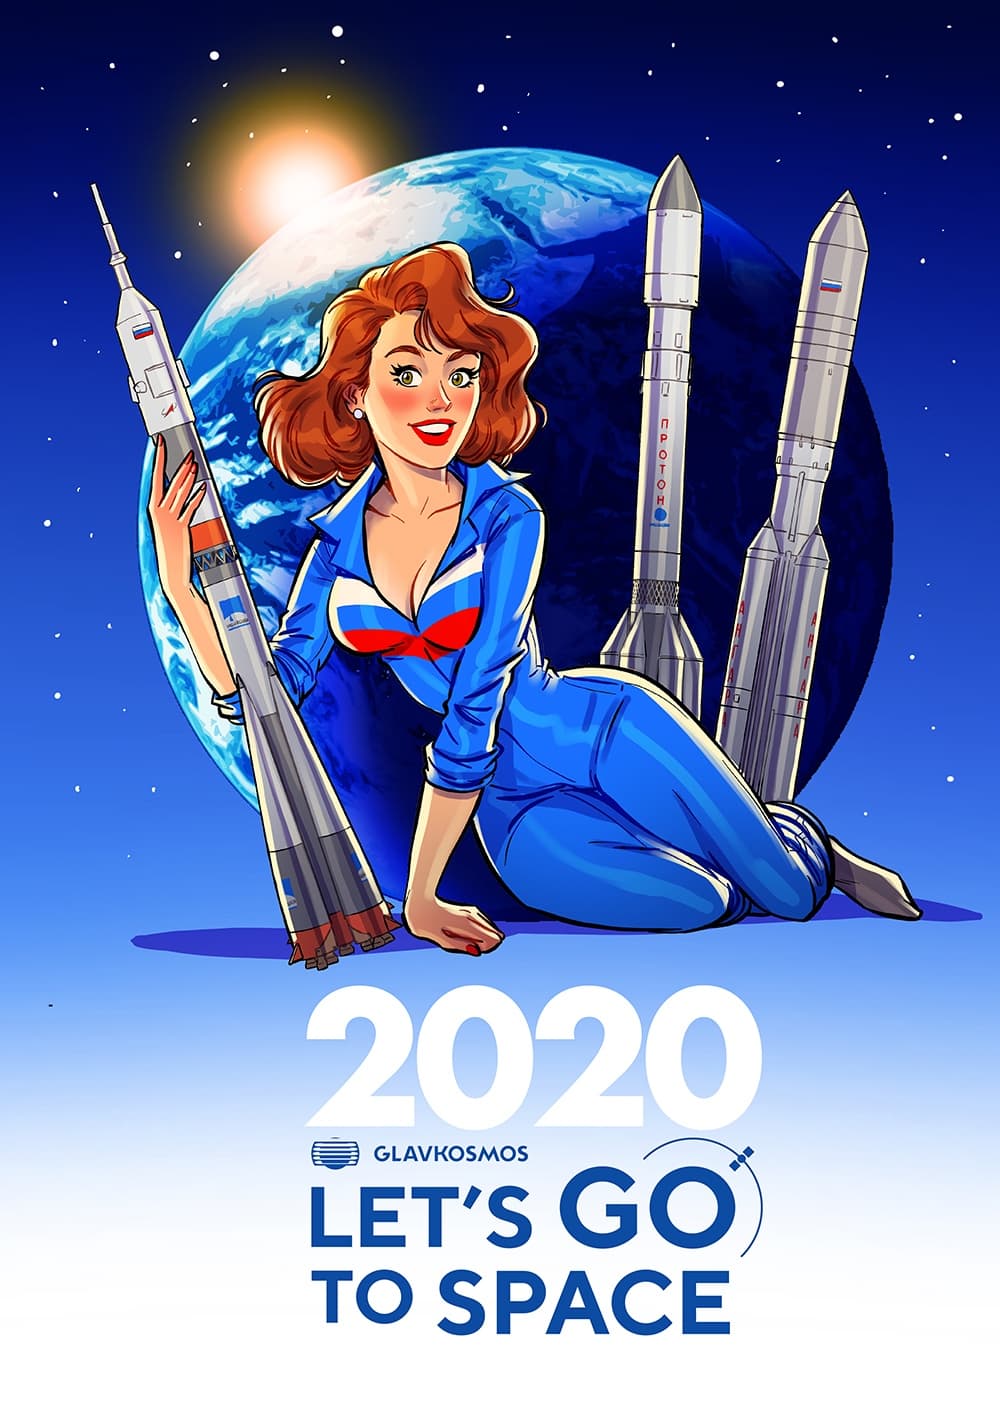 Художник нарисовал для Главкосмоса календарь 2020 года в пин-ап стиле, спрятав там шутки и пасхалки 40